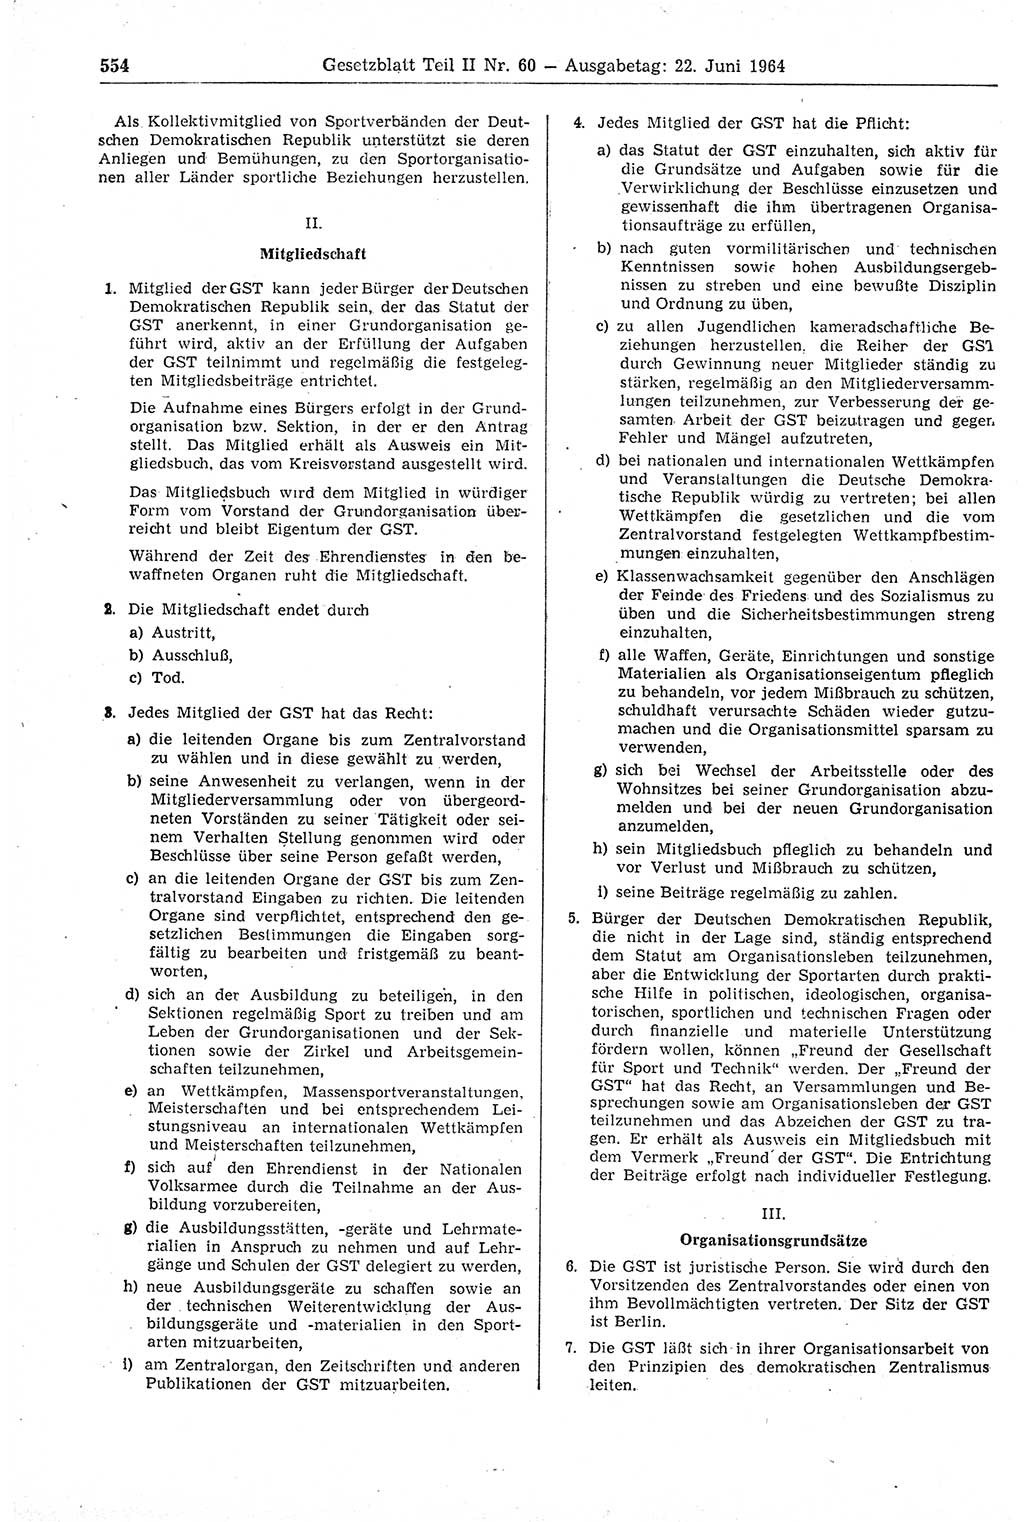 Gesetzblatt (GBl.) der Deutschen Demokratischen Republik (DDR) Teil ⅠⅠ 1964, Seite 554 (GBl. DDR ⅠⅠ 1964, S. 554)